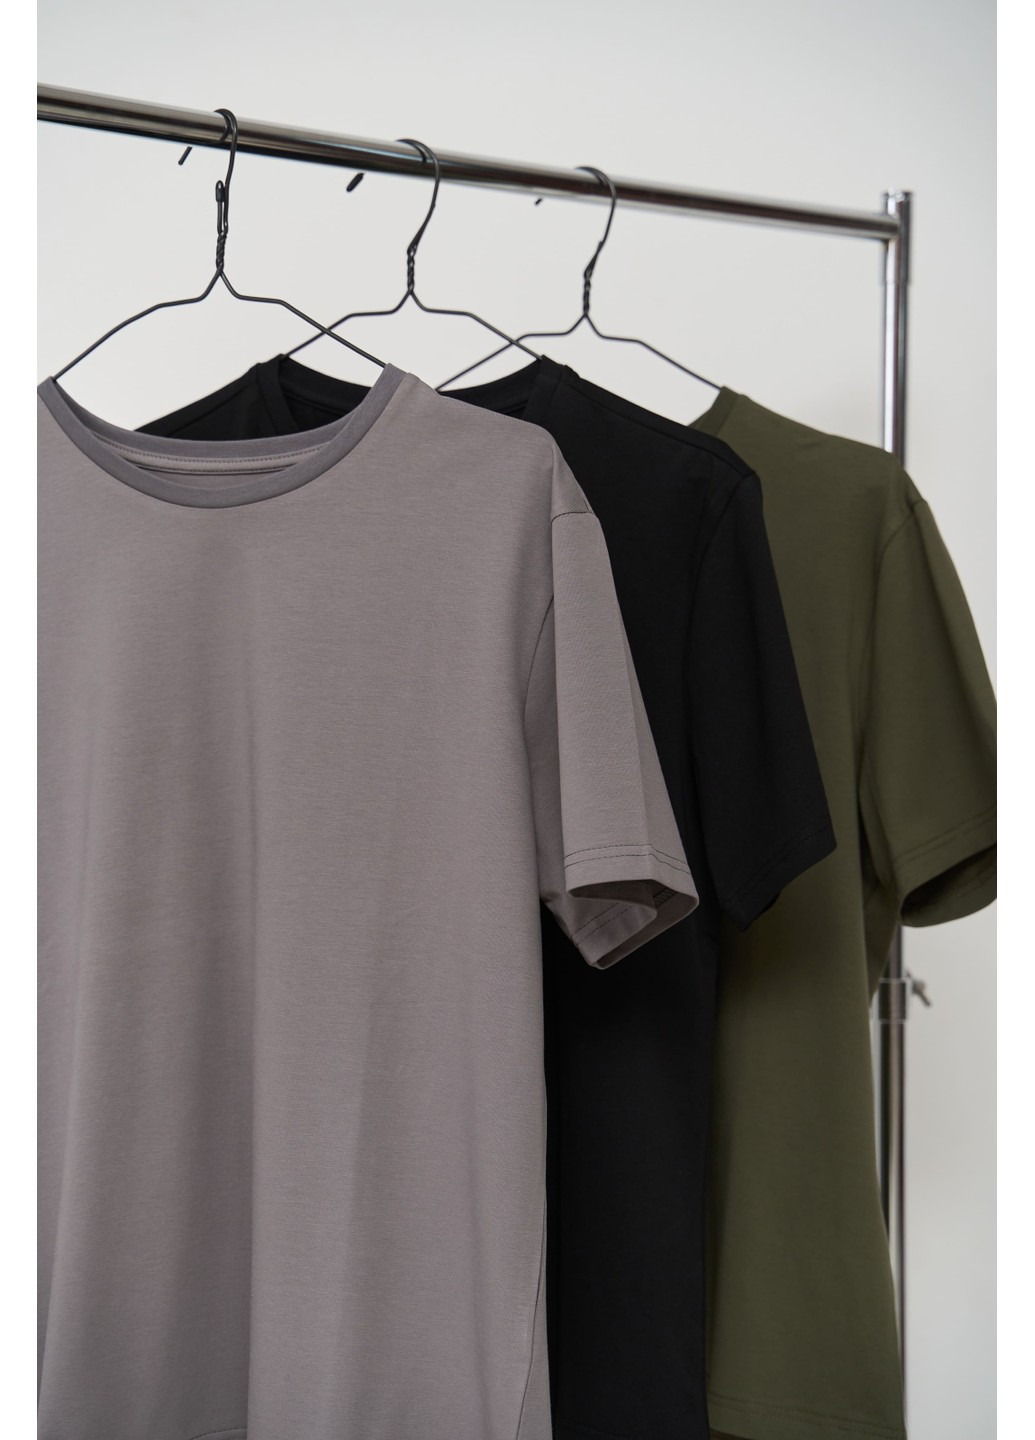 Комбинированная набор футболок мужских cotton basic 3 шт Handy Wear